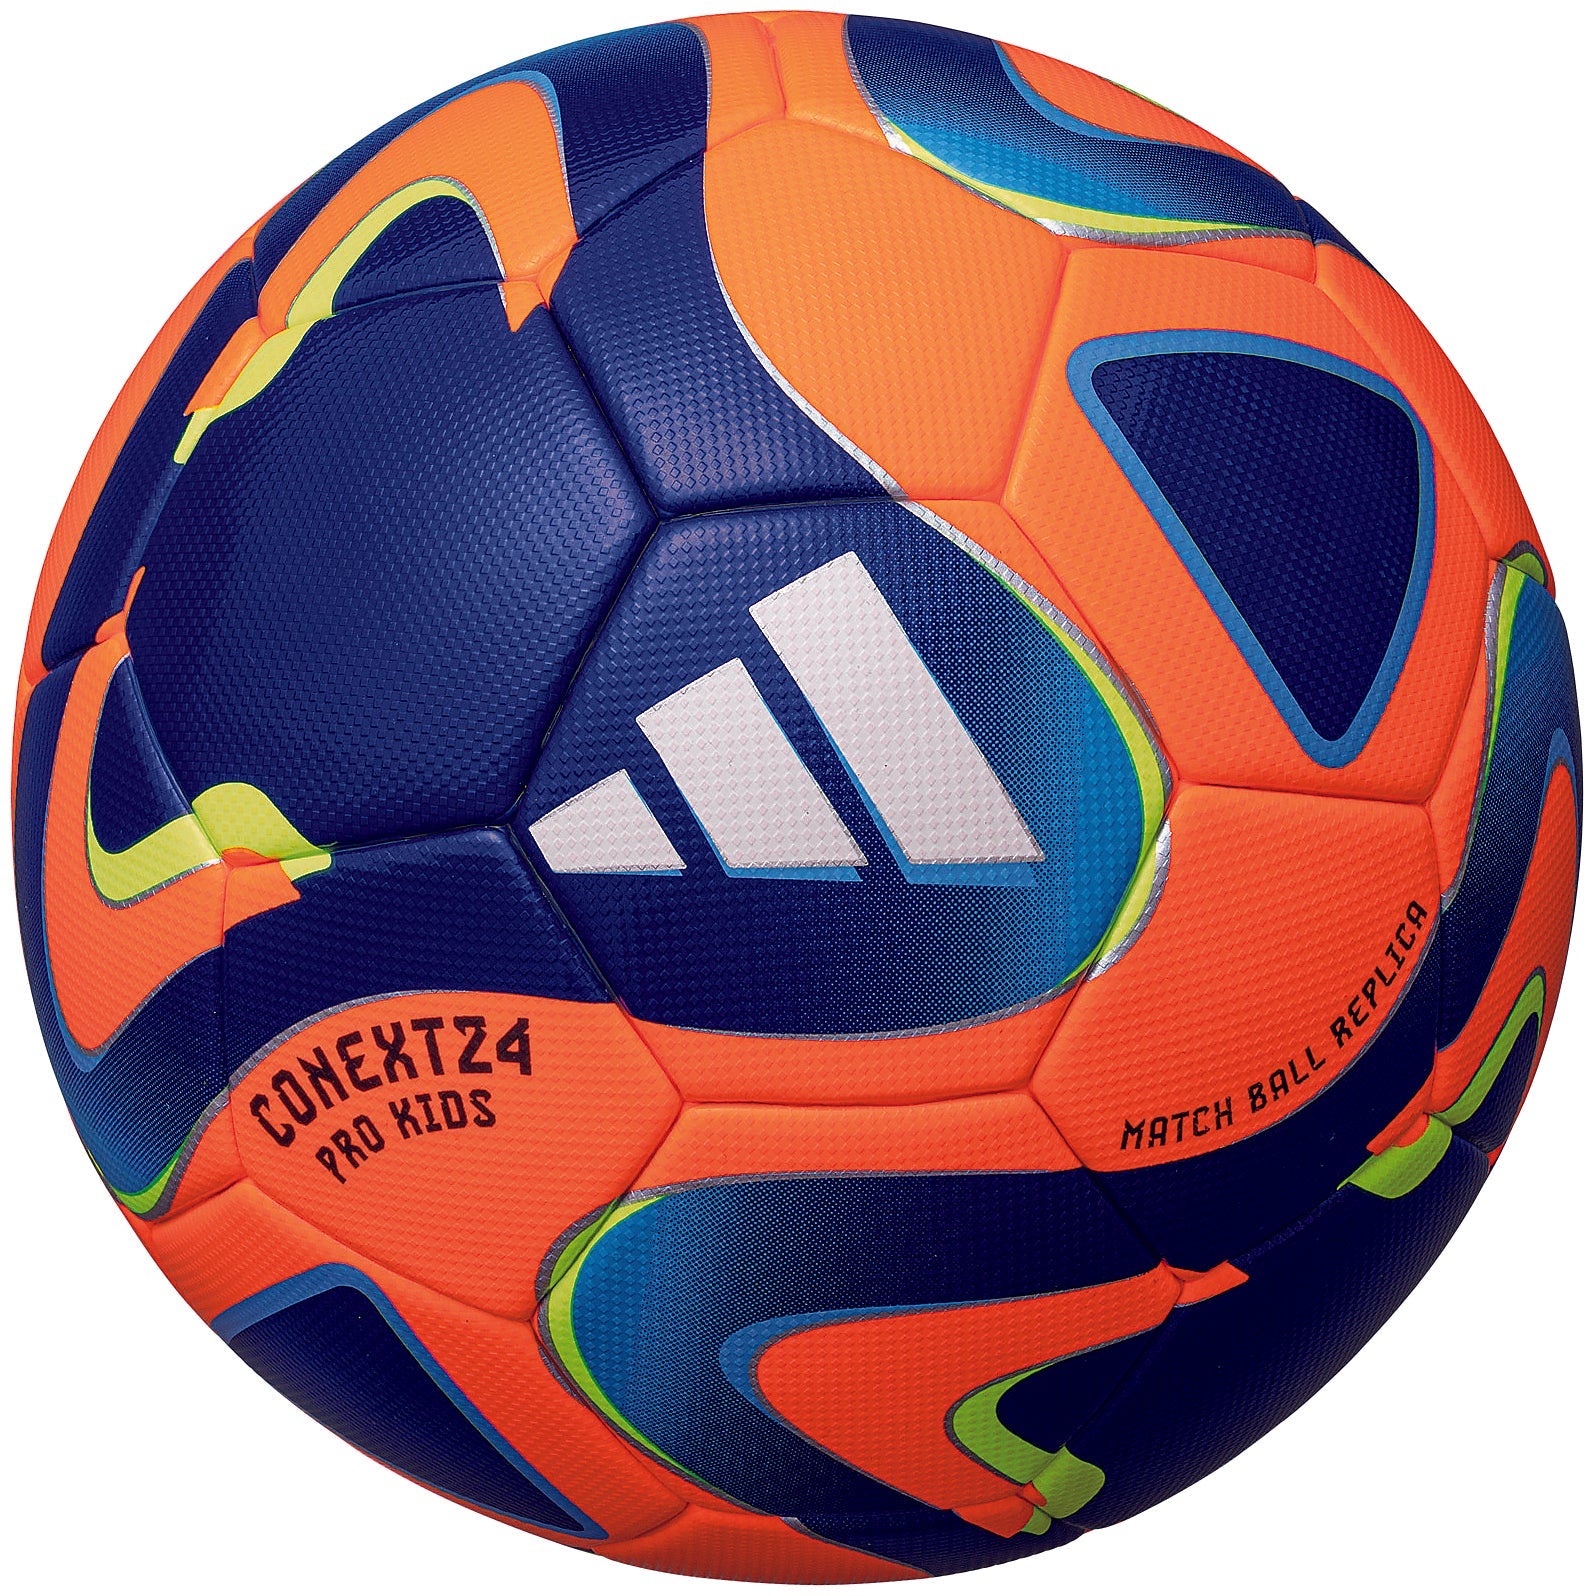 公式試合球コネクト21 プロ 5号❗️検定球 - サッカーボール